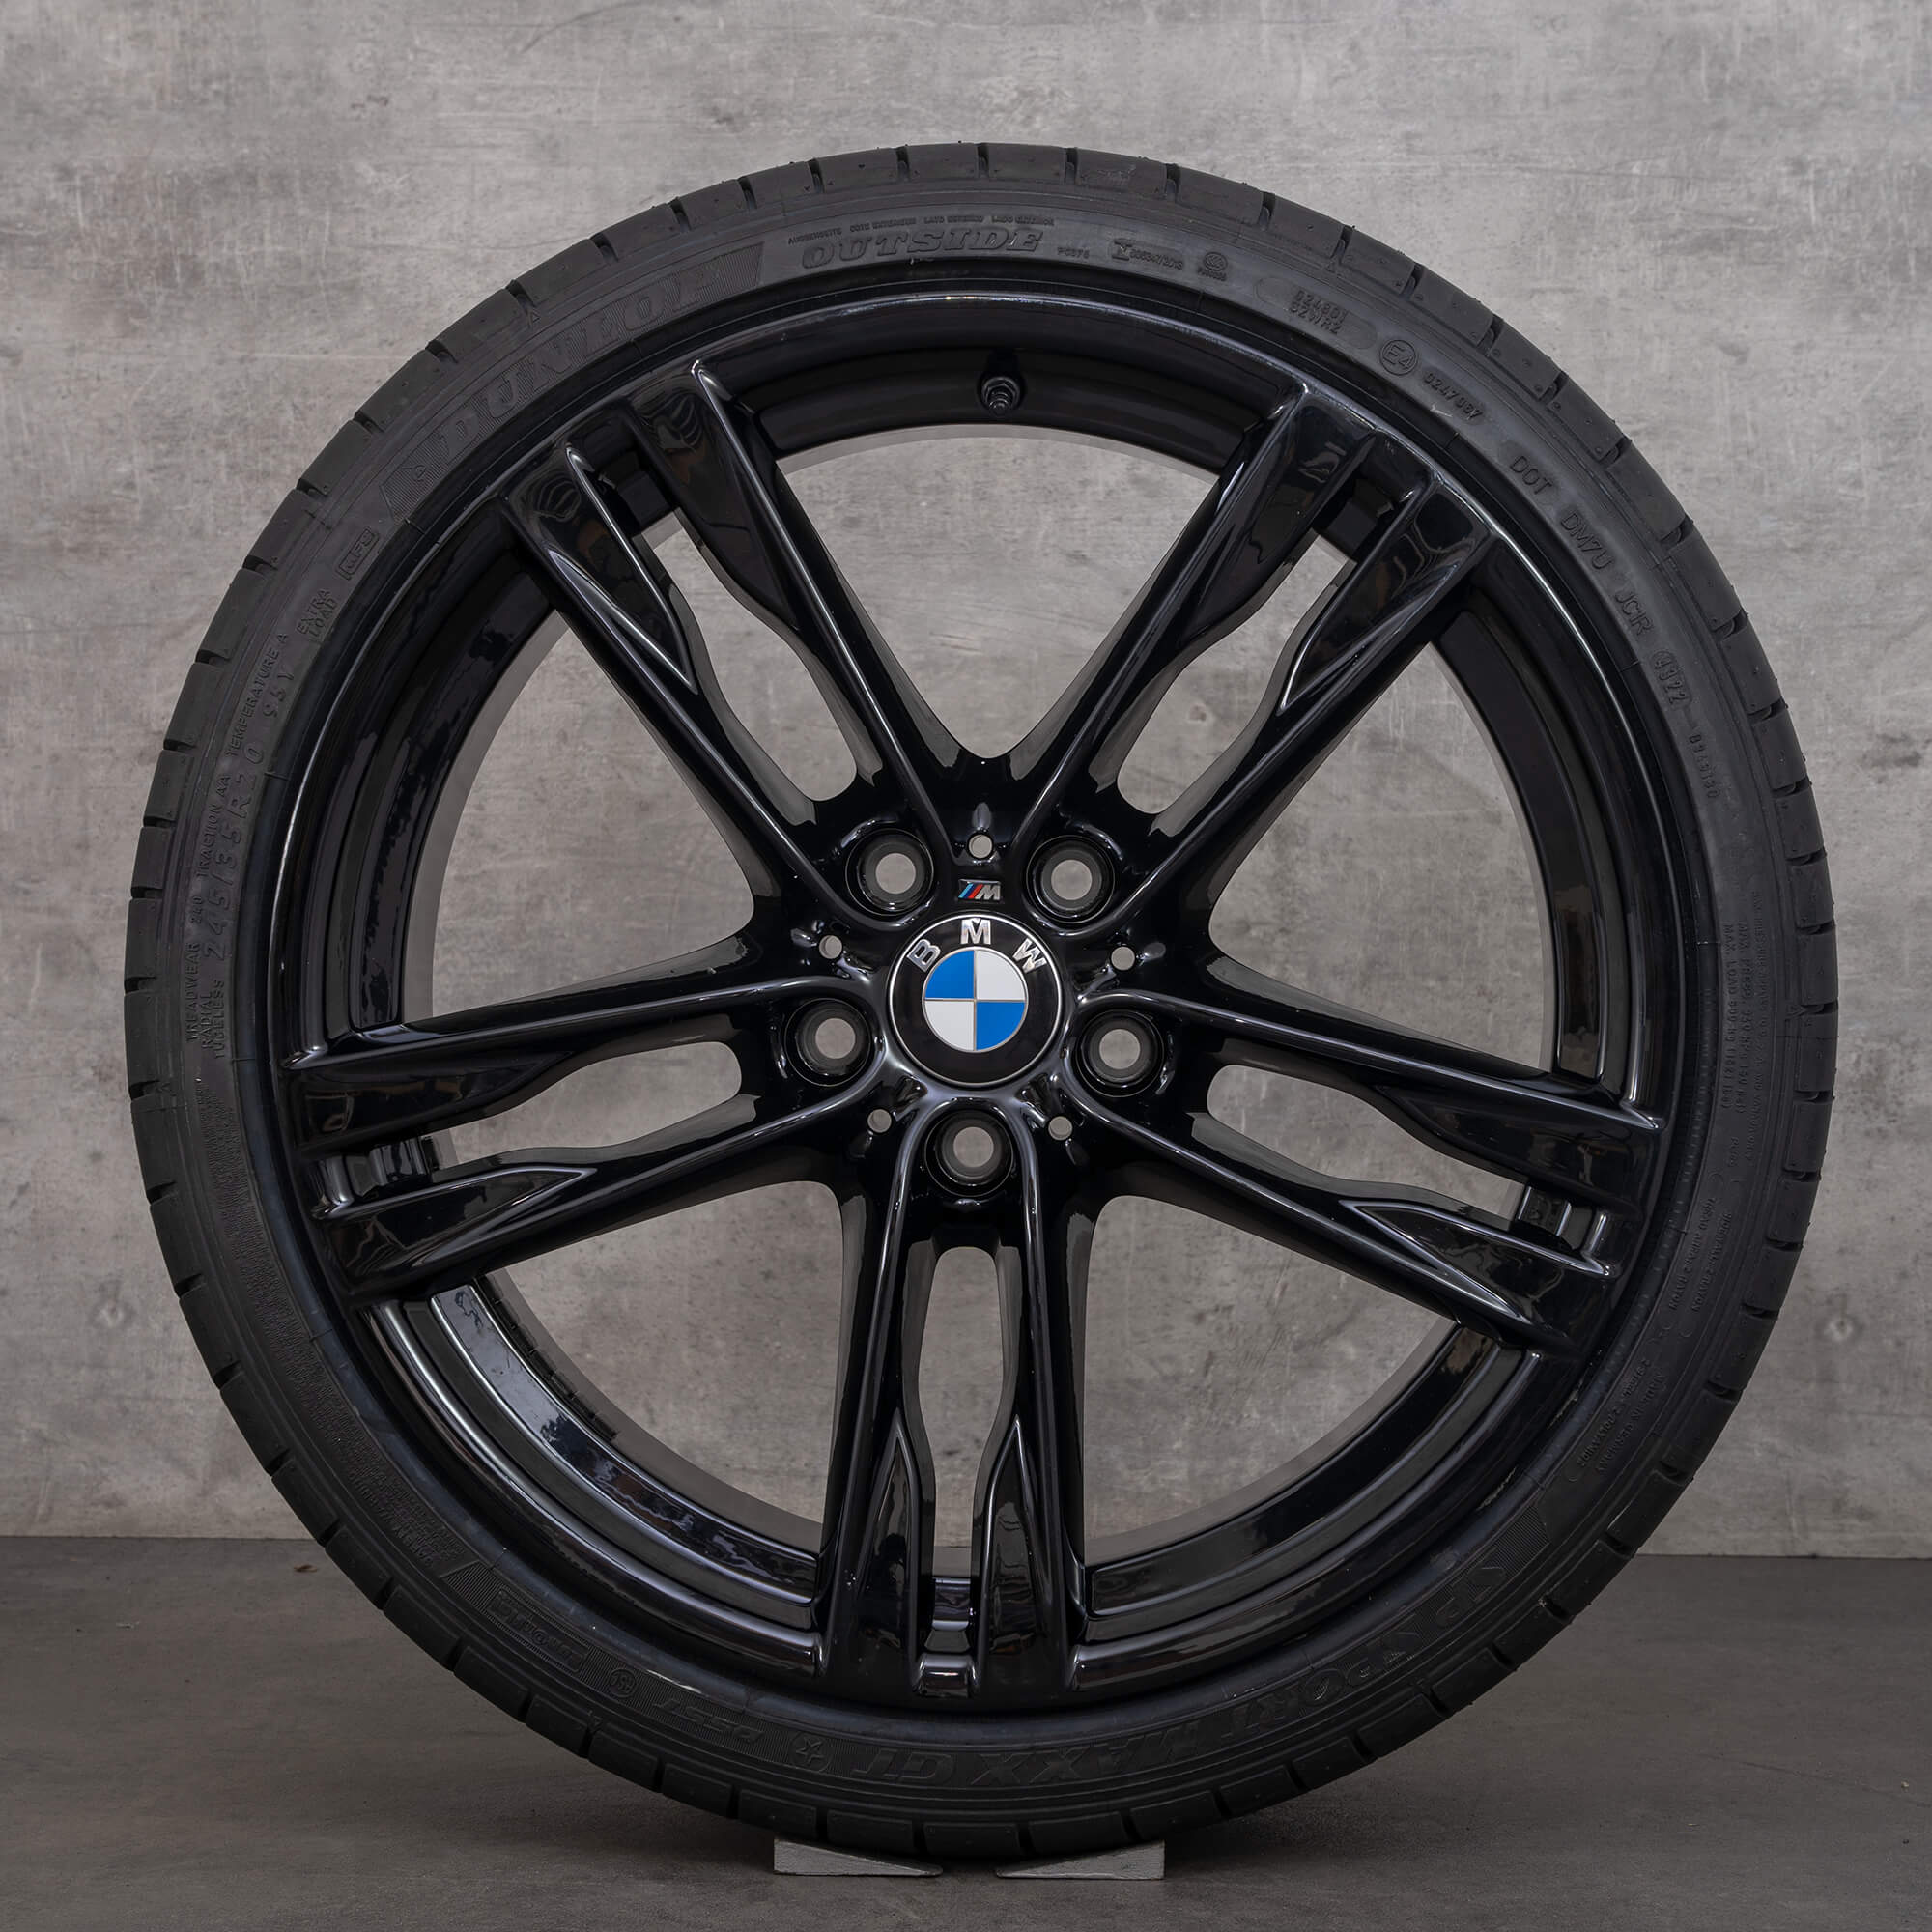 BMW série 5 F10 F11 6 F12 F13 jantes pneus de verão 20 polegadas Styling 373 M